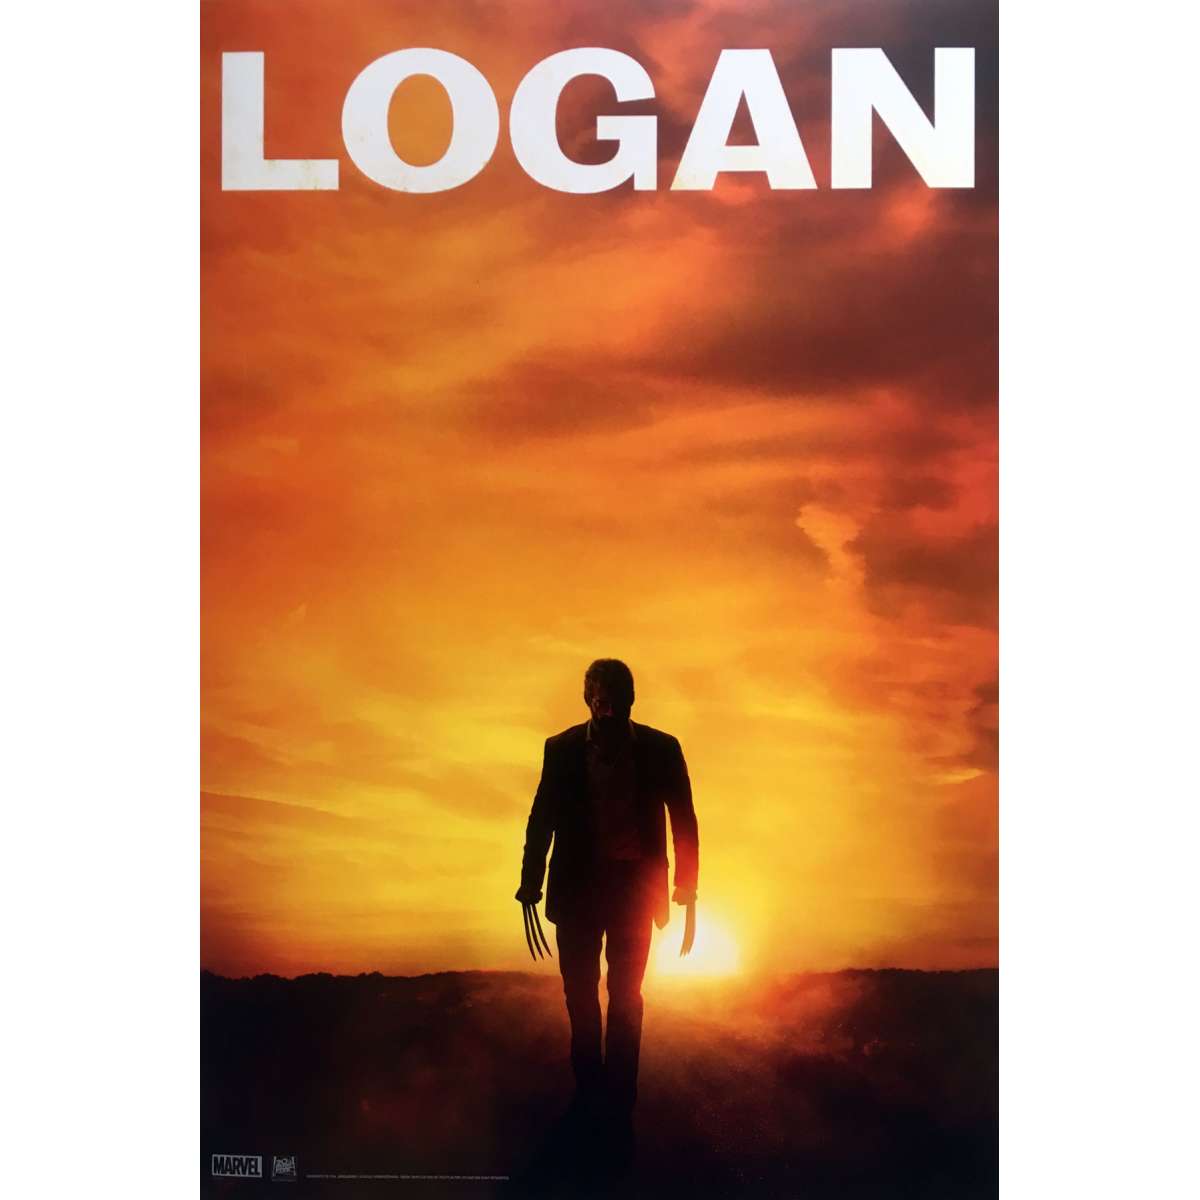 logan (film)